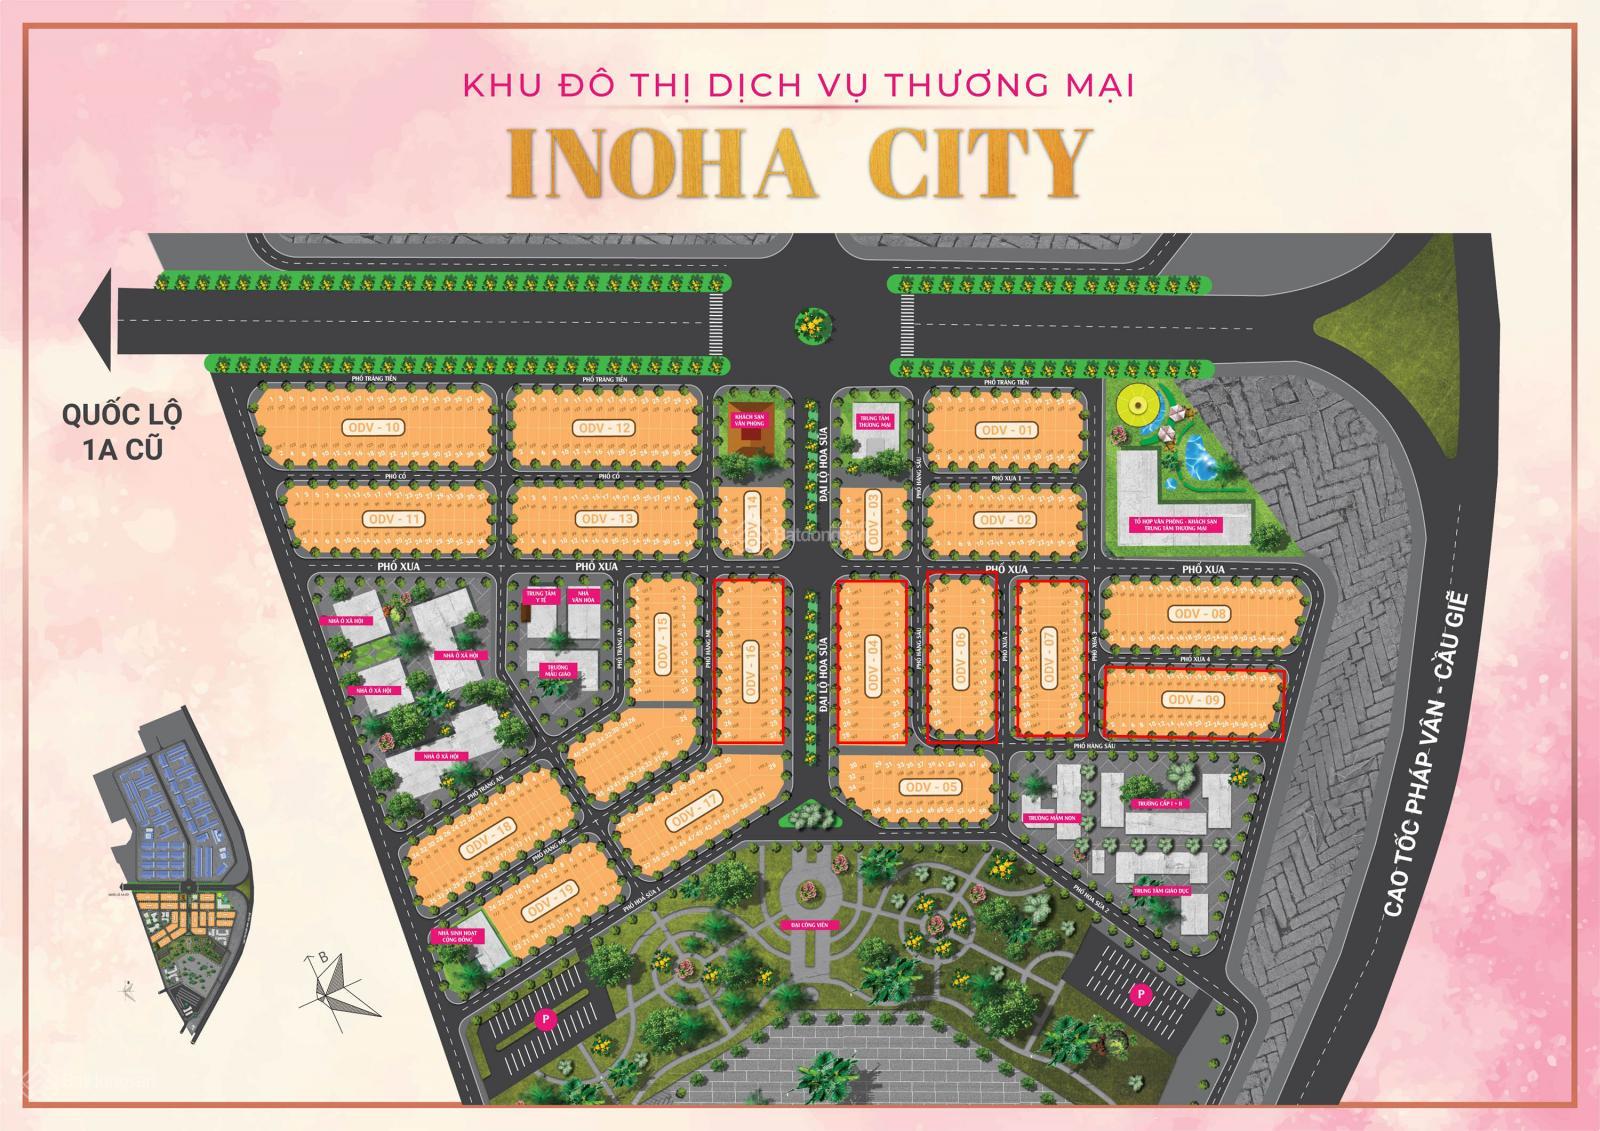 10 căn Inoha City siêu khan hiếm ngoại giao đẹp nhất dự án LH 09.4567.1789